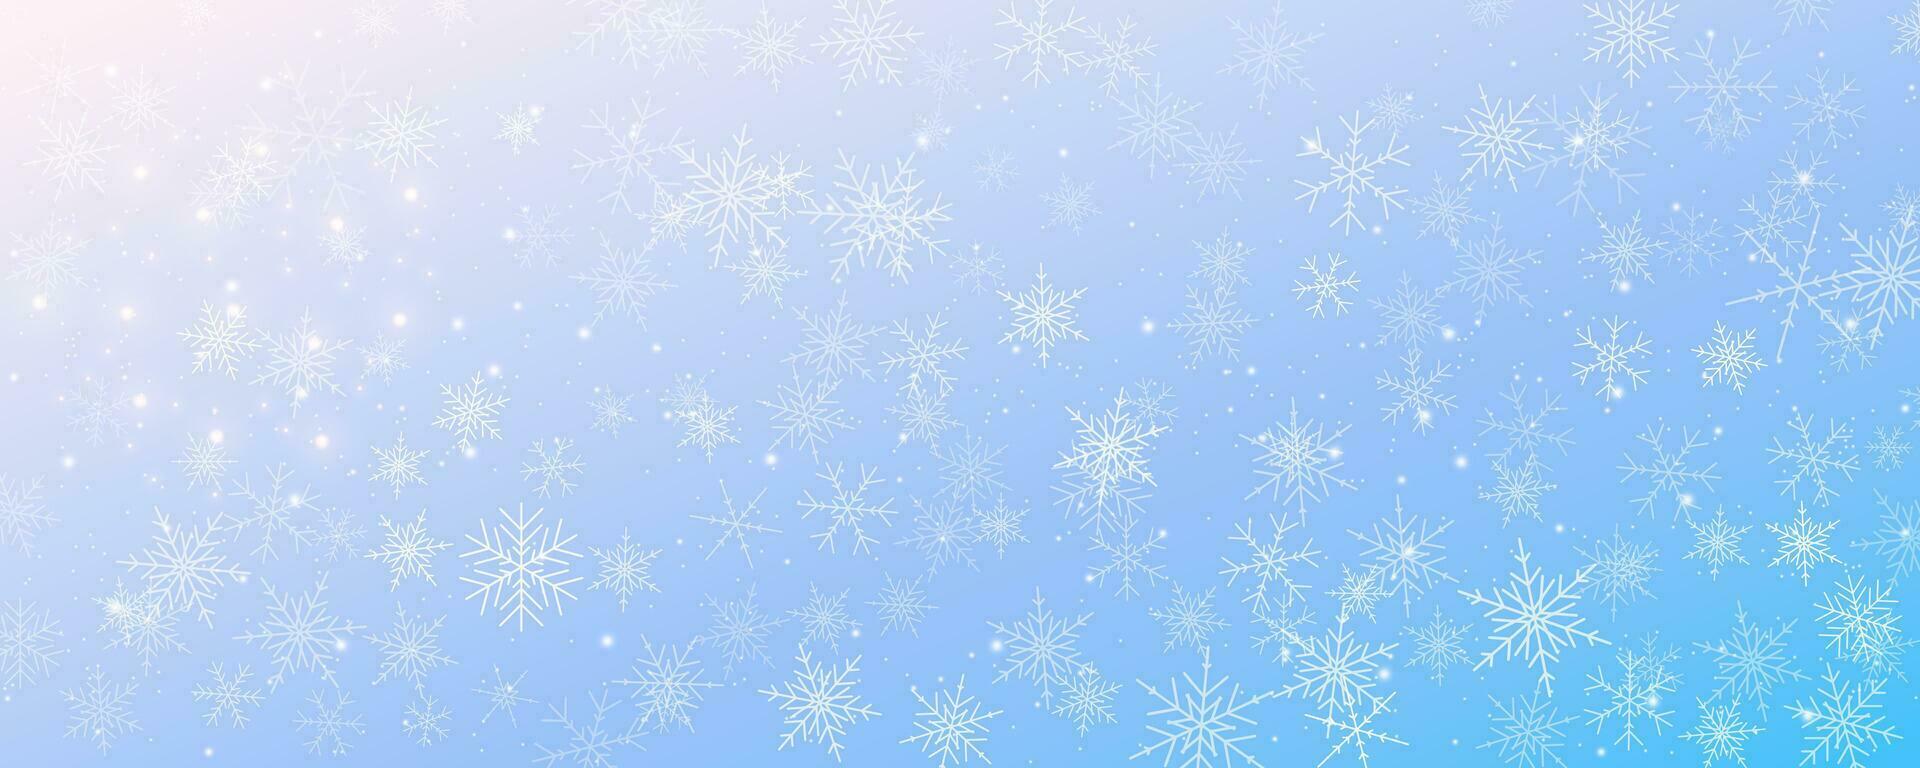 Schneeflocken Winter Weihnachten Vektor Hintergrund. Blau und Weiß Frost Himmel. Gradient kalt Schneesturm Landschaft.